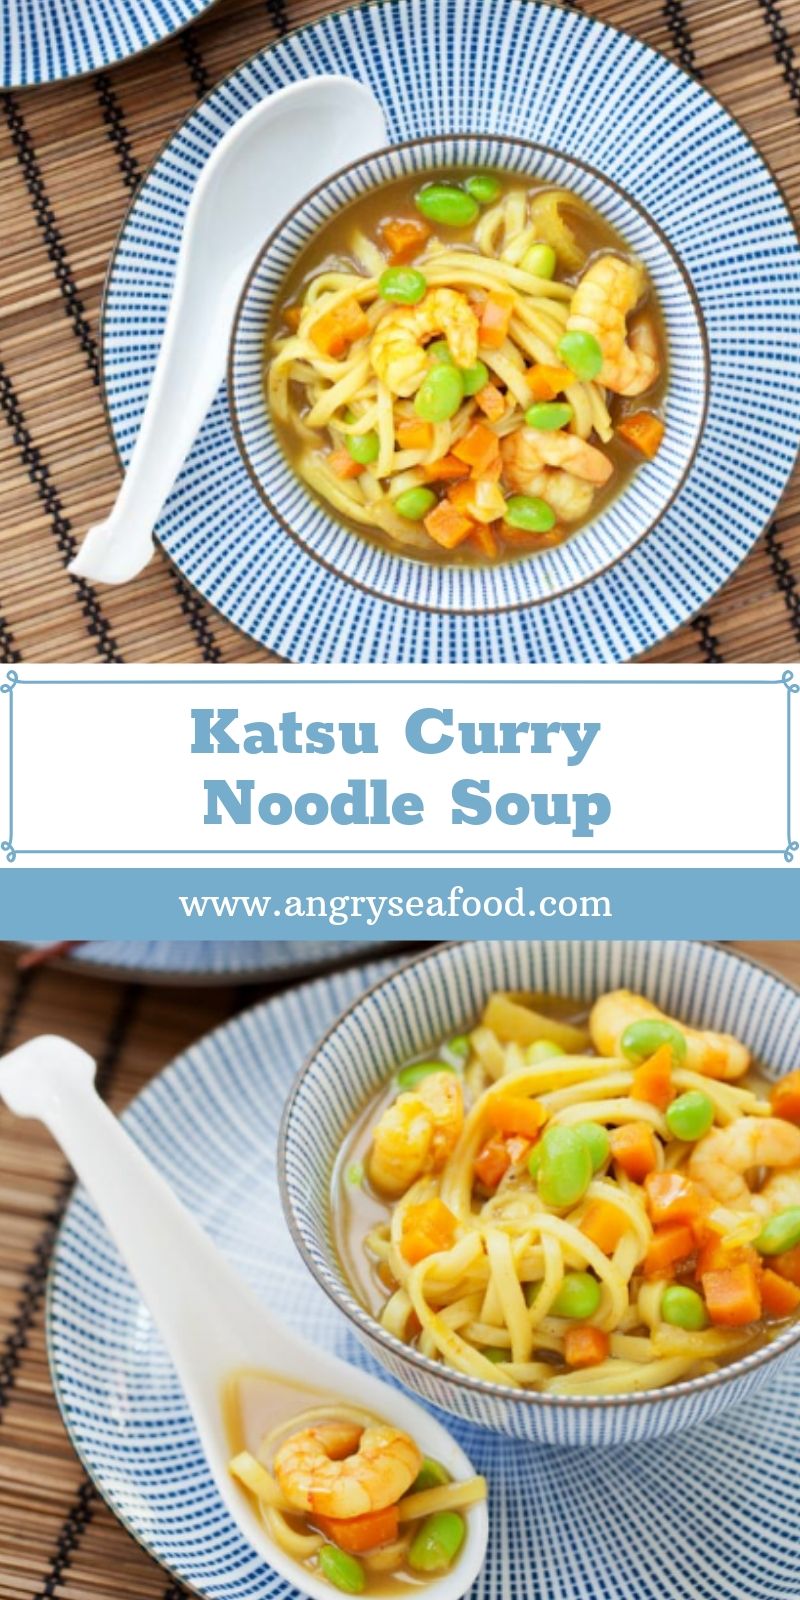 Katsu Curry Noodle Soup